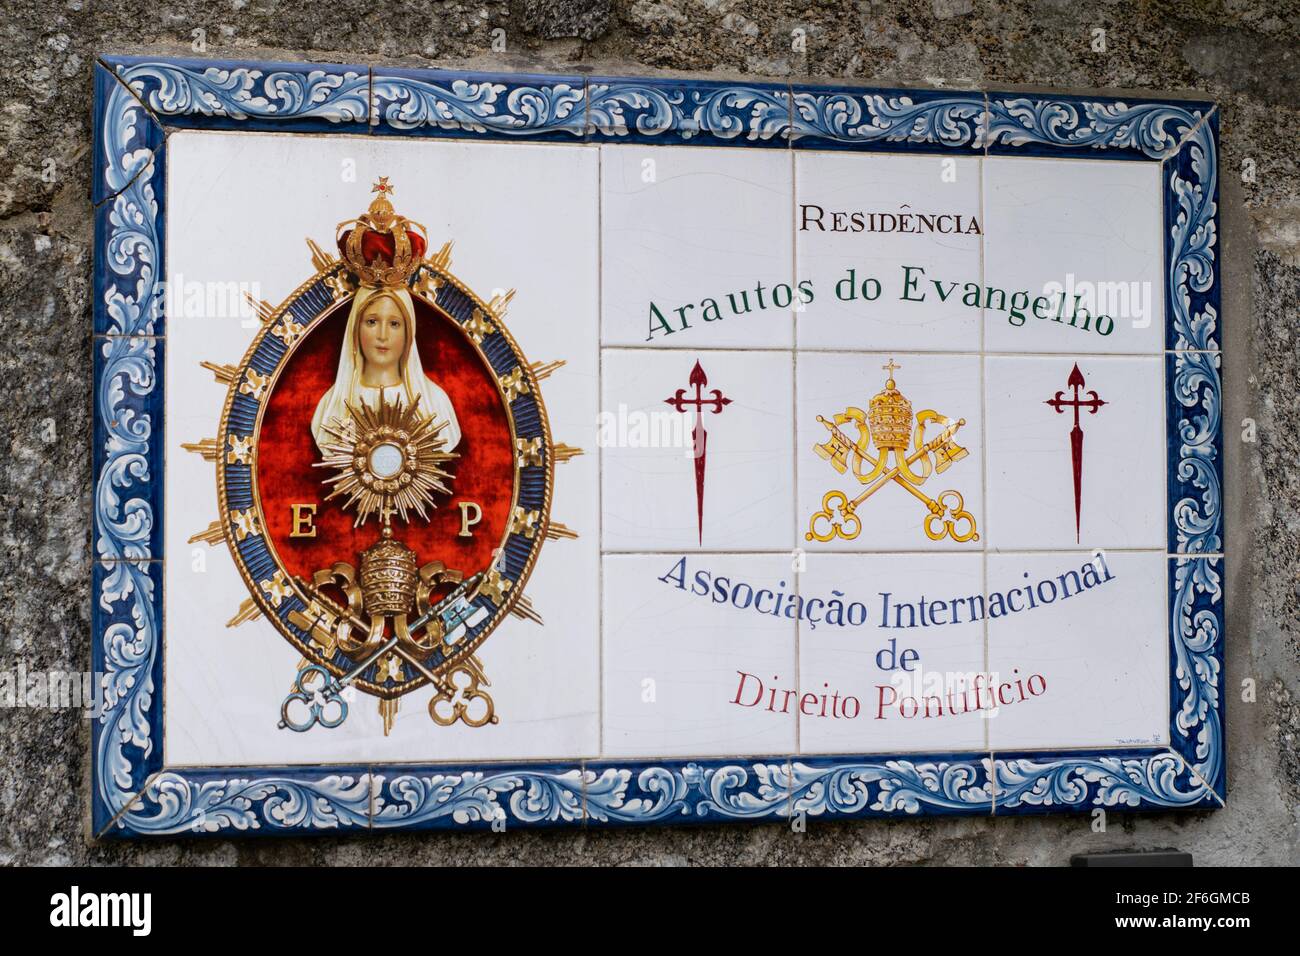 Portugiesische religiöse Fliesen. Residência Arautos do Evangelho, Associação internacional de Direito Pontifício Stockfoto